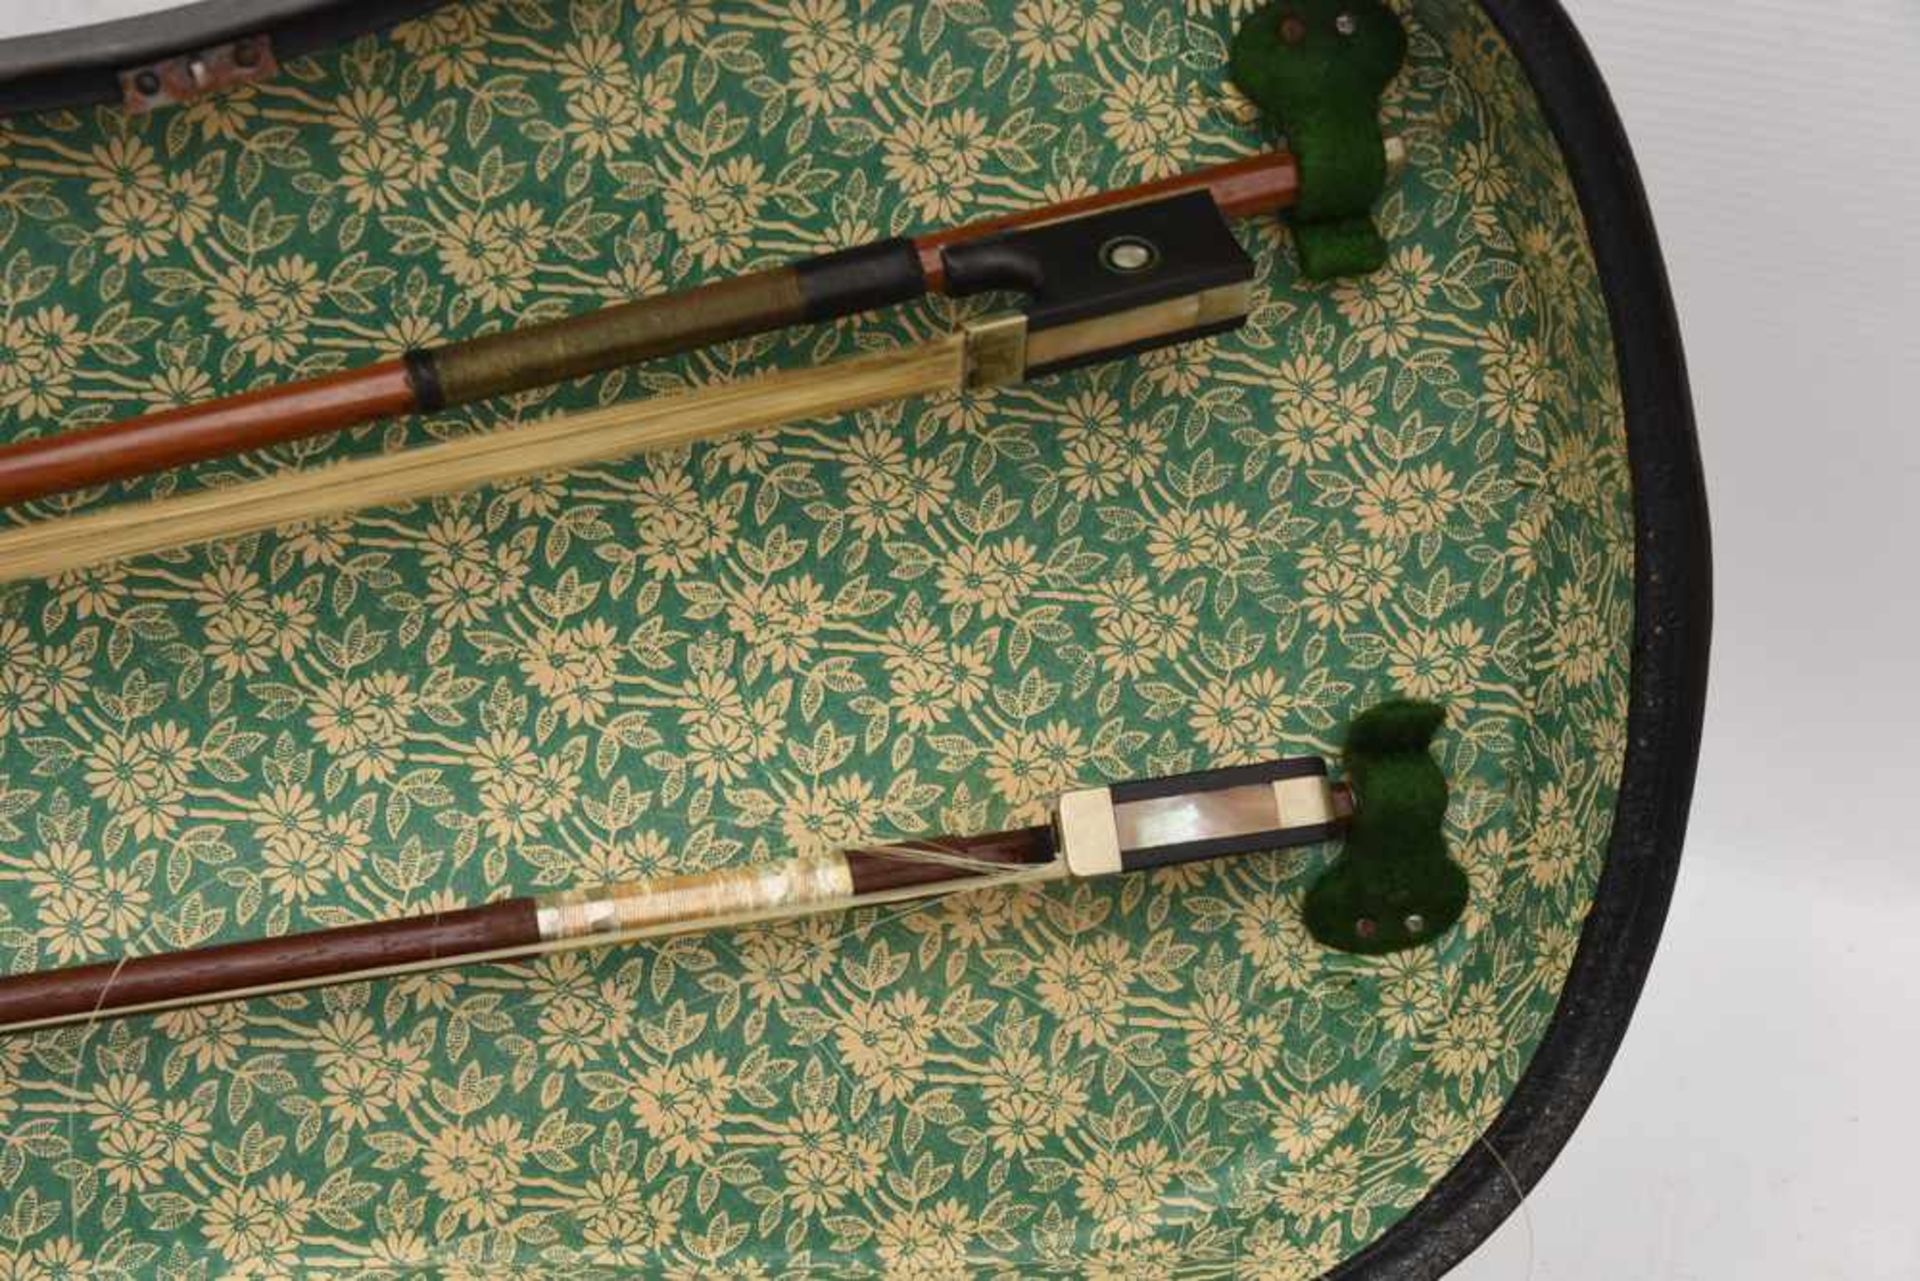 GEIGE 1, Holz/Rosshaar, Deutschland 1. Hälfte 20. Jahrhundert Geige im Kasten mit Bogen. Beschädigt. - Bild 7 aus 8